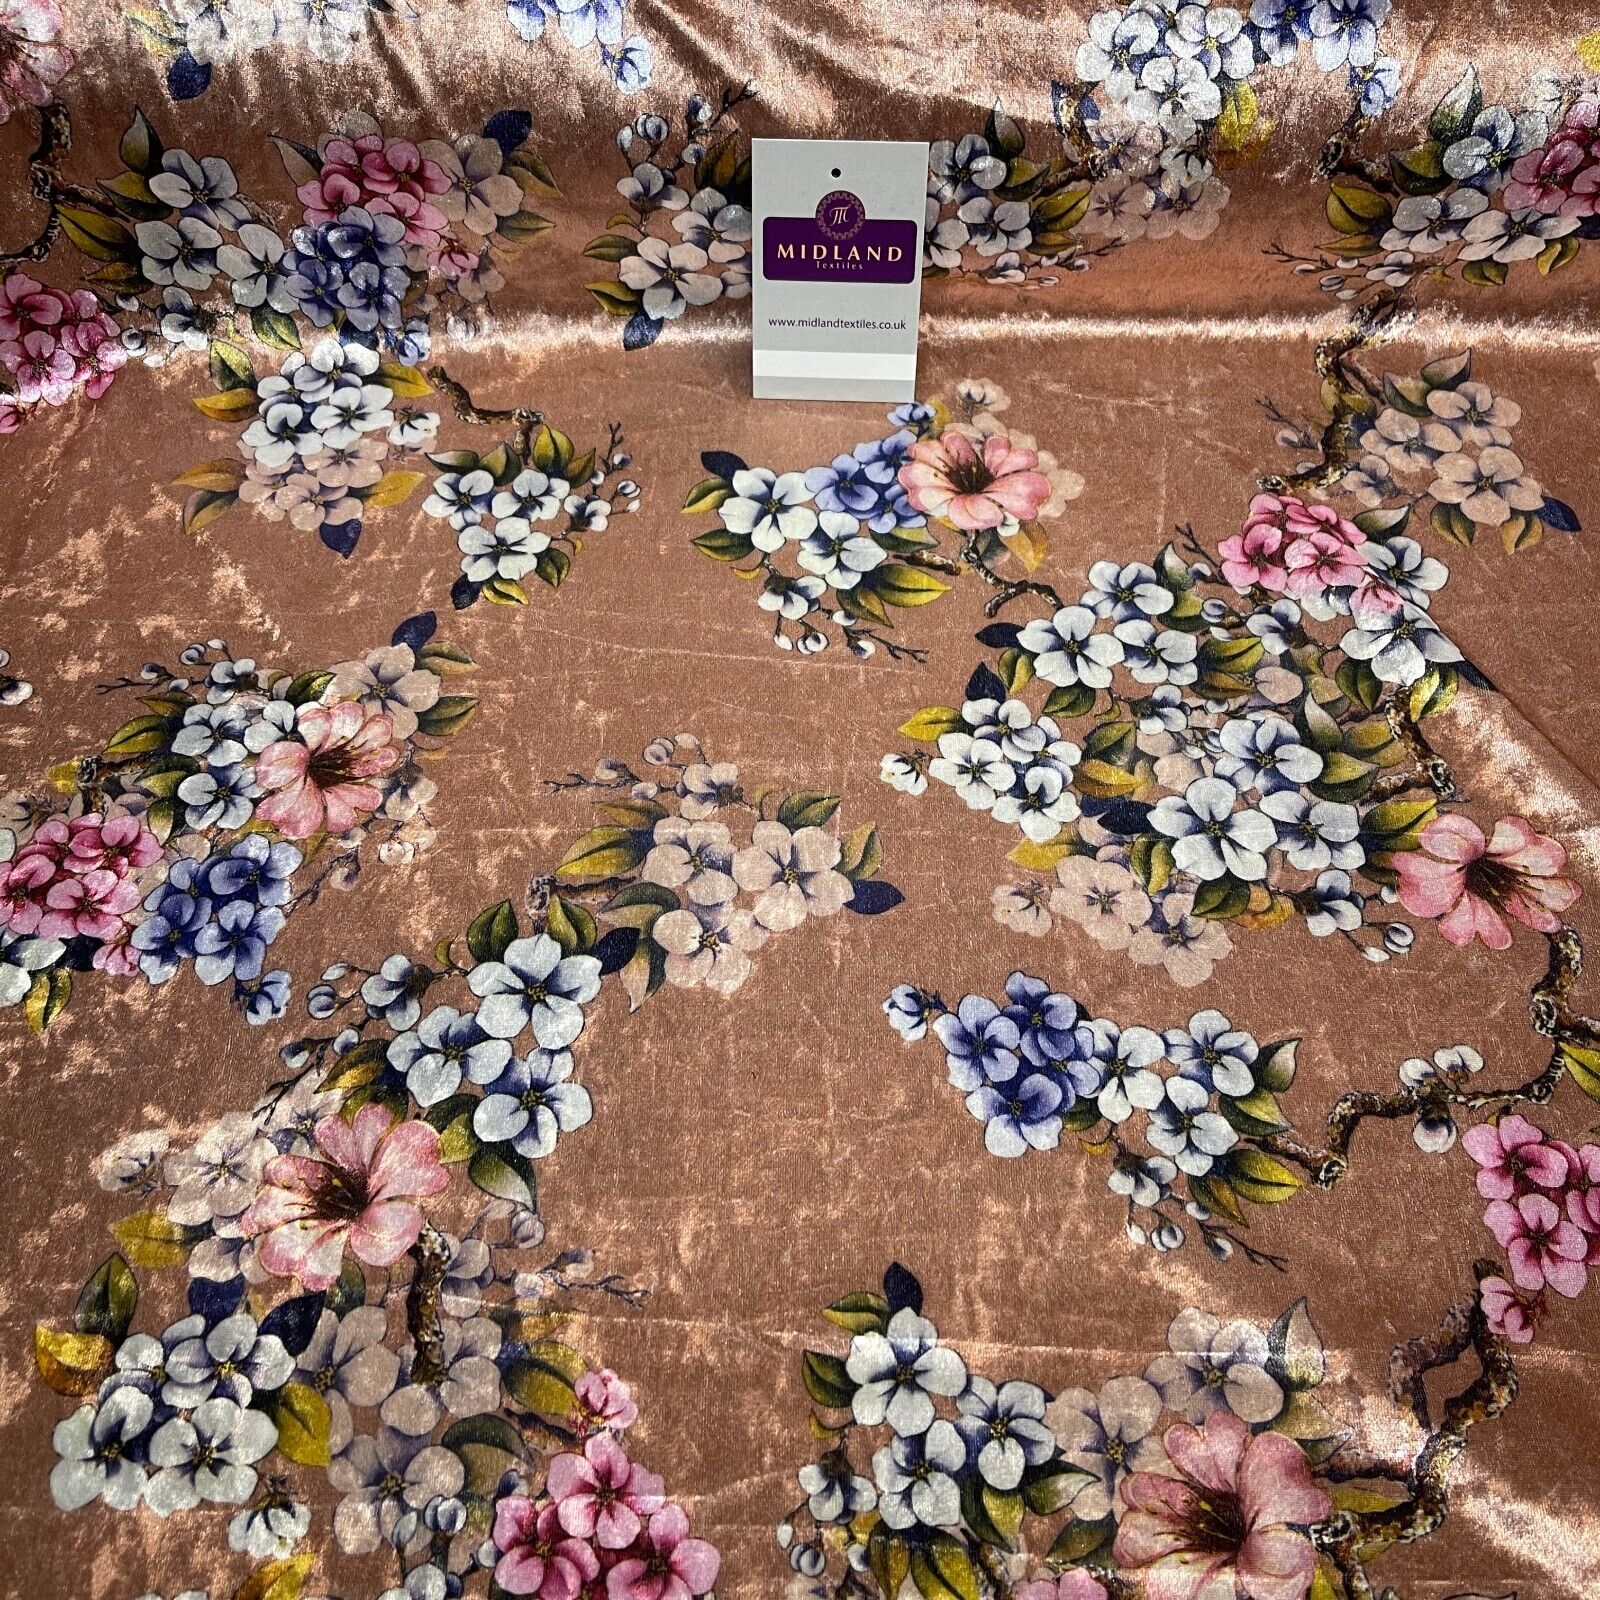 Mink floral Printed Crushed velvet Dress fabric M1400-45 Mtex